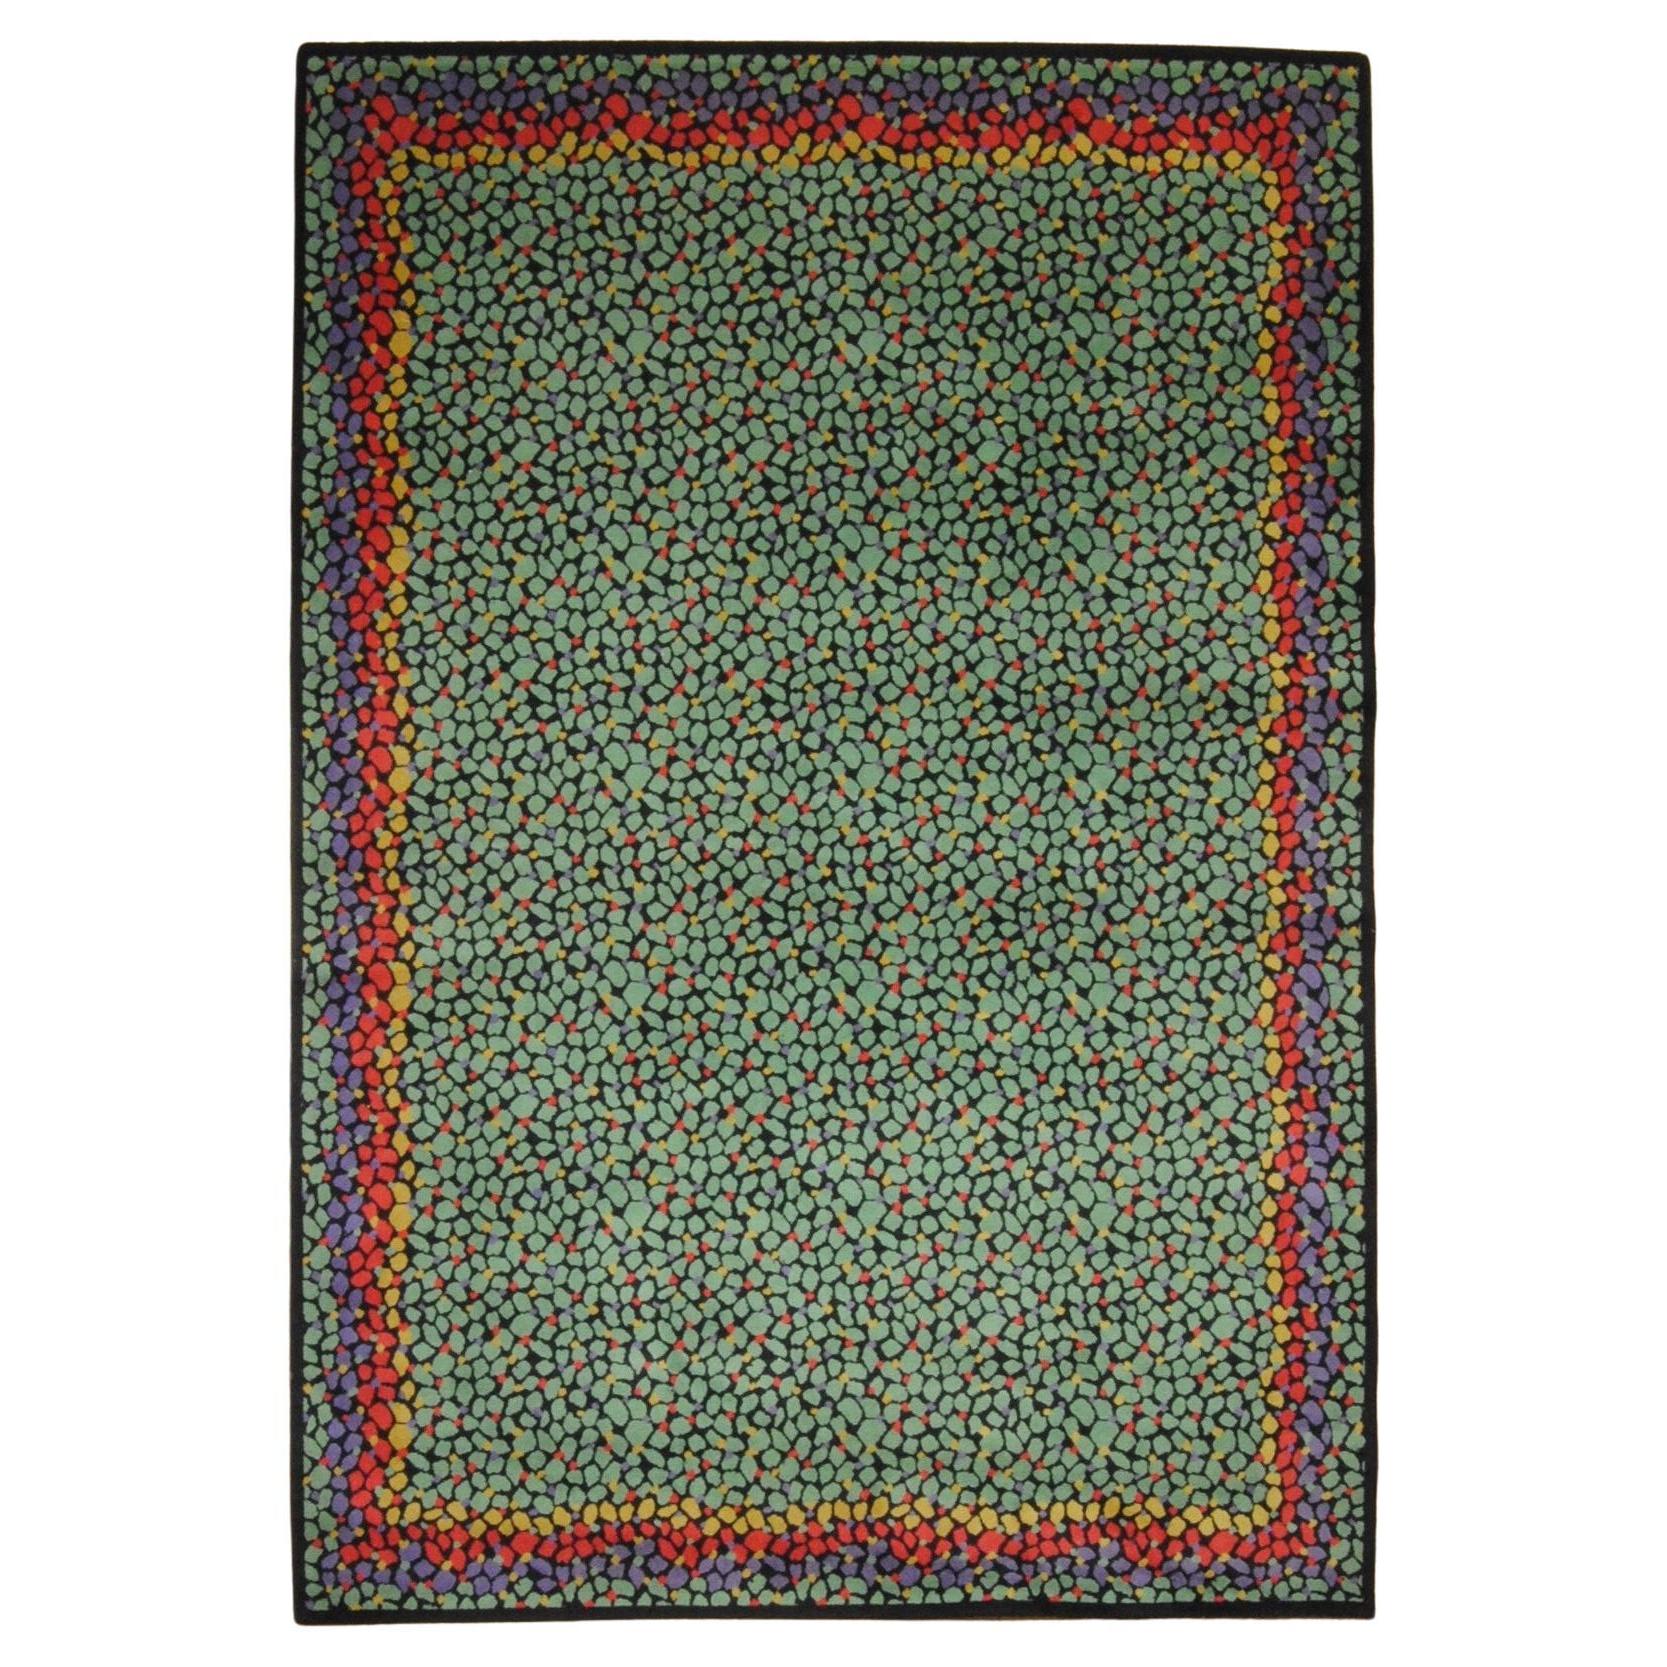 Missoni Casa-Teppich aus dem 20. Jahrhundert, grün, rot und schwarz, von Murine inspiriert, um 1983